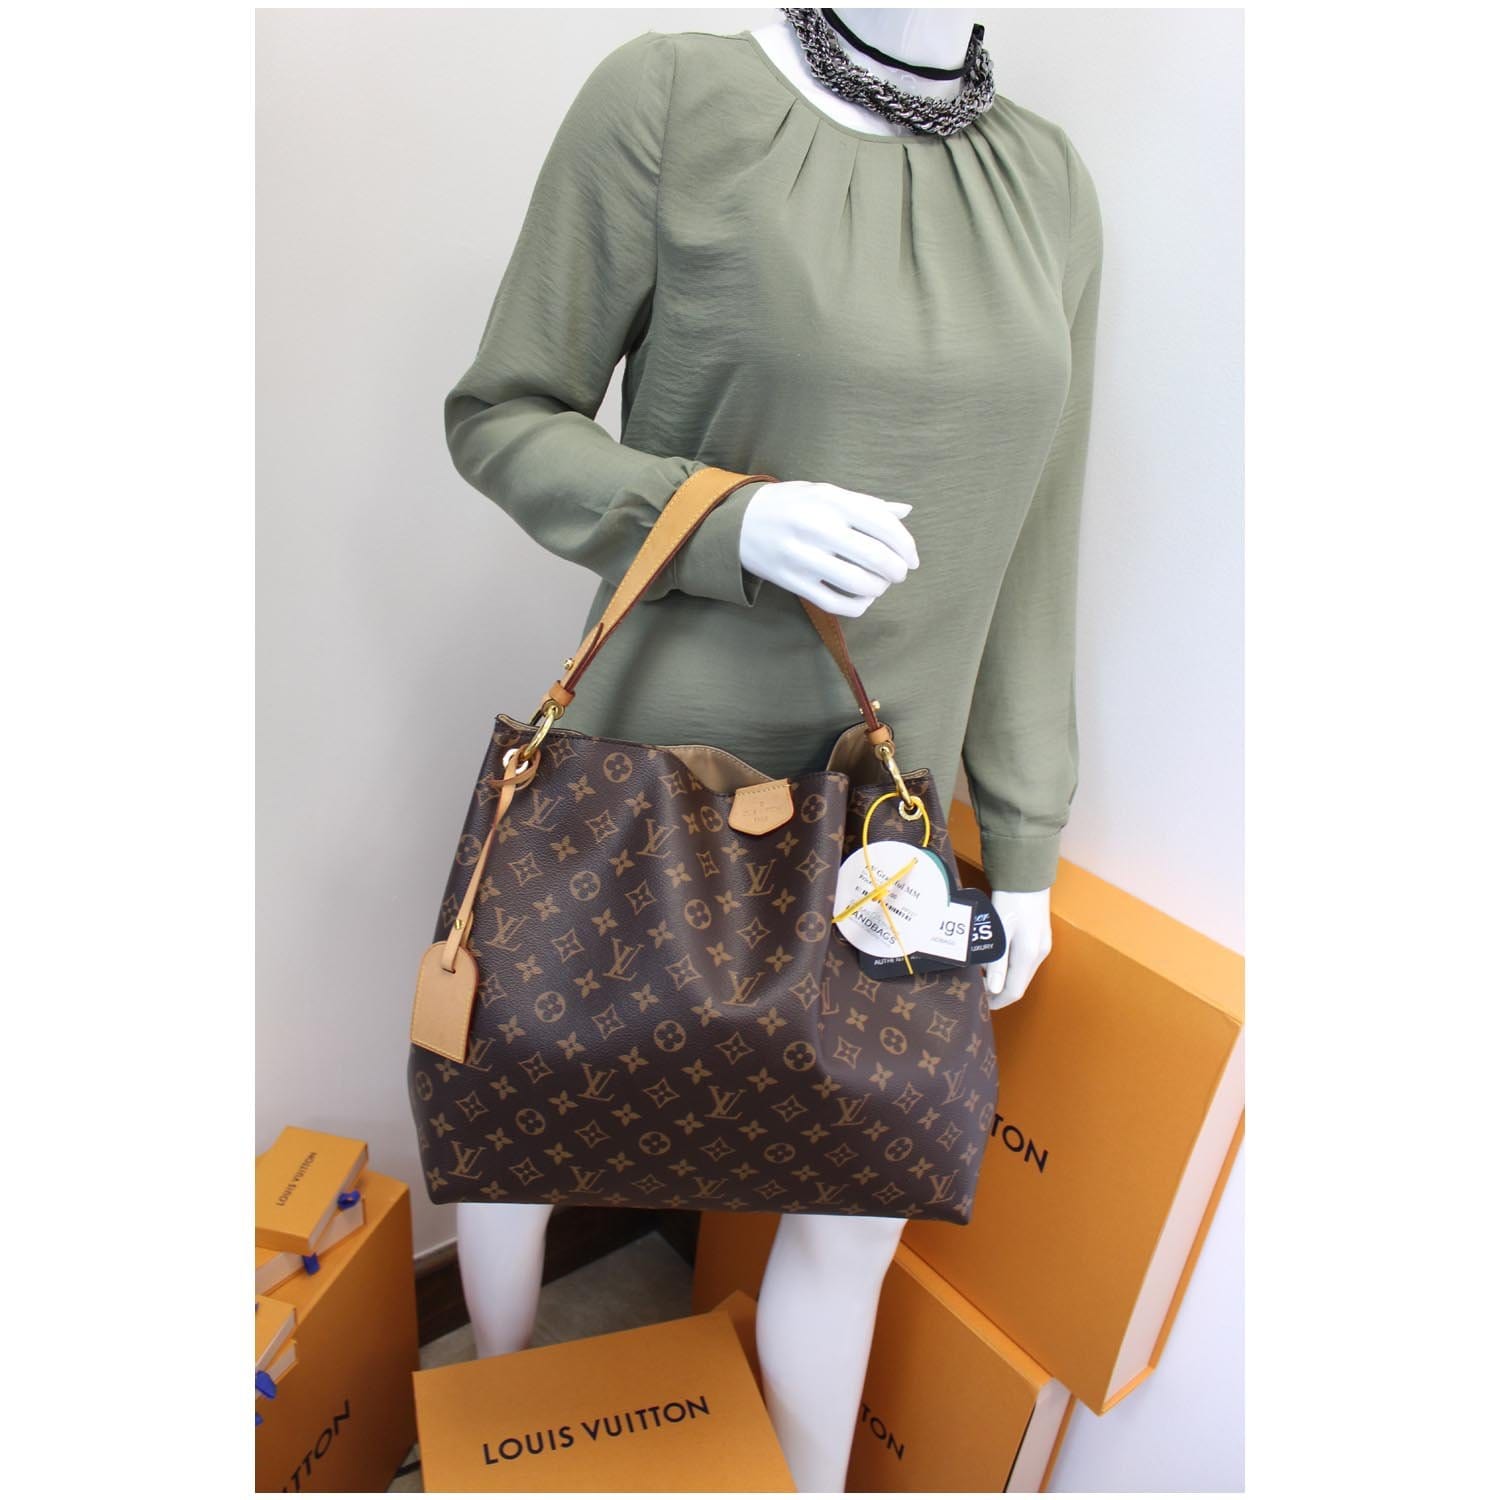 Handbags Louis Vuitton Graceful mm